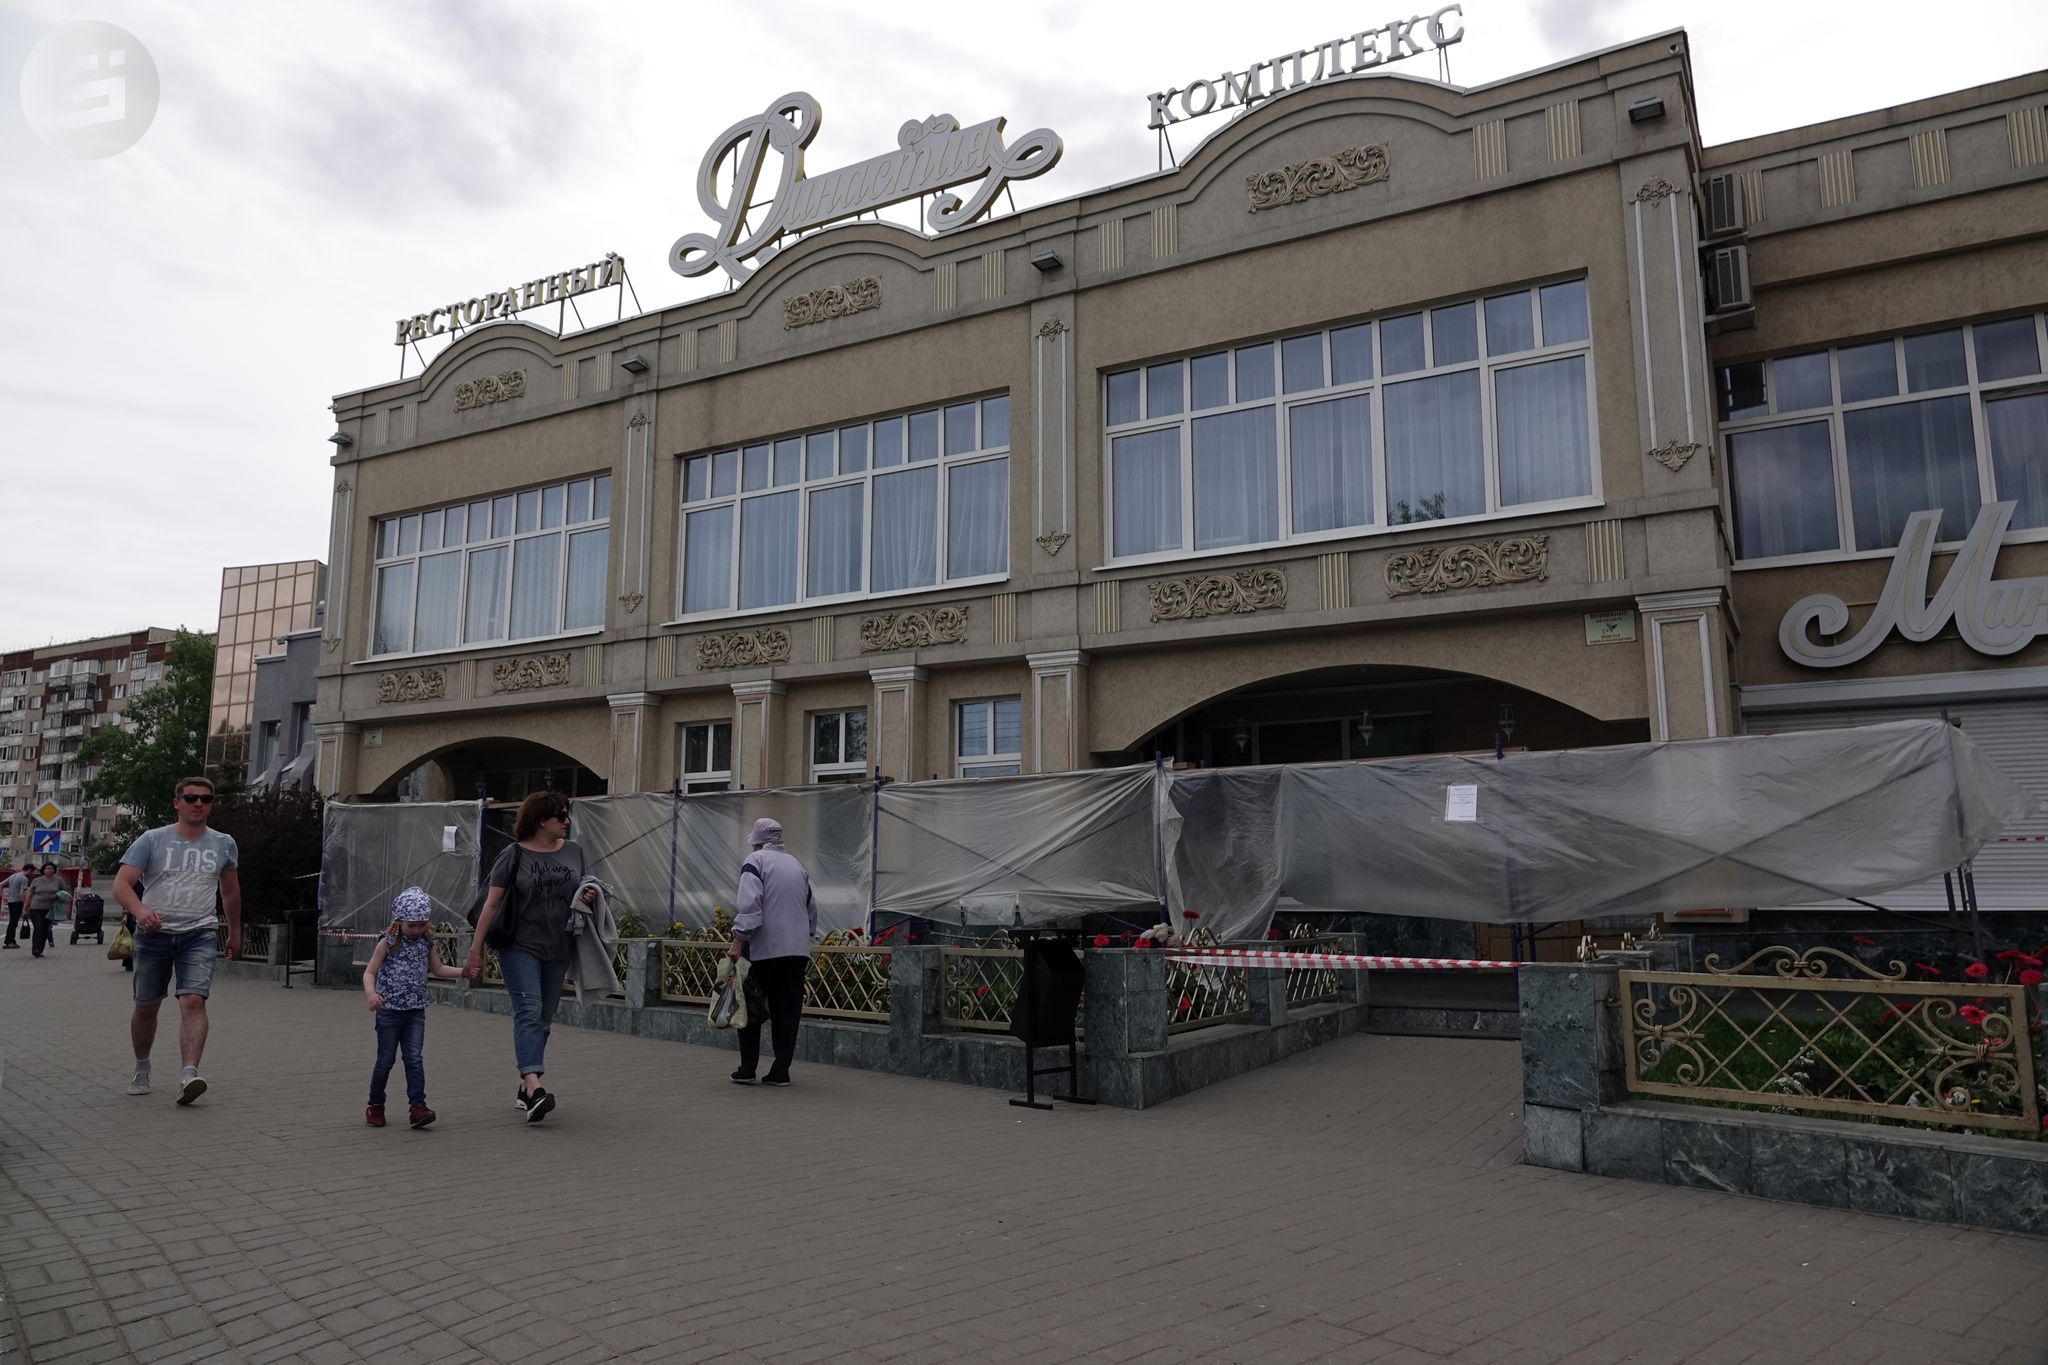 Ресторан «Династия» в Ижевске, где отравились люди, возобновит работу с 15 июня